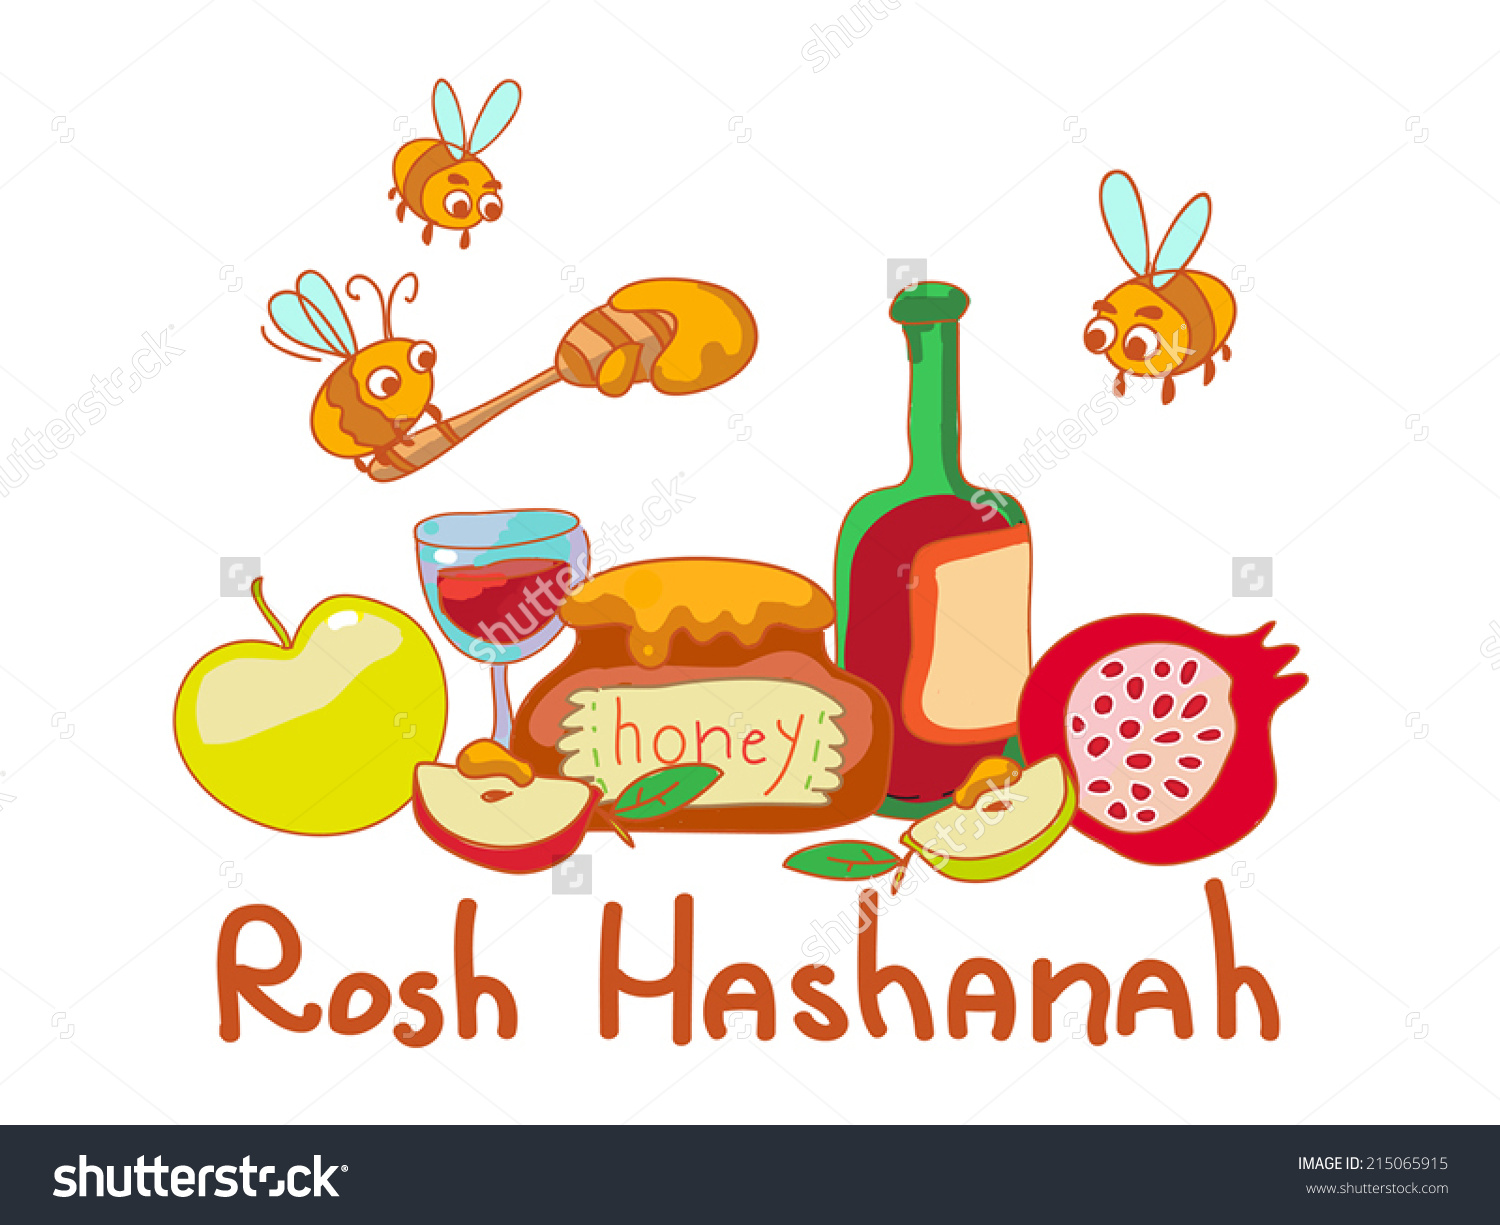 Rosh Hashanah Illustration.